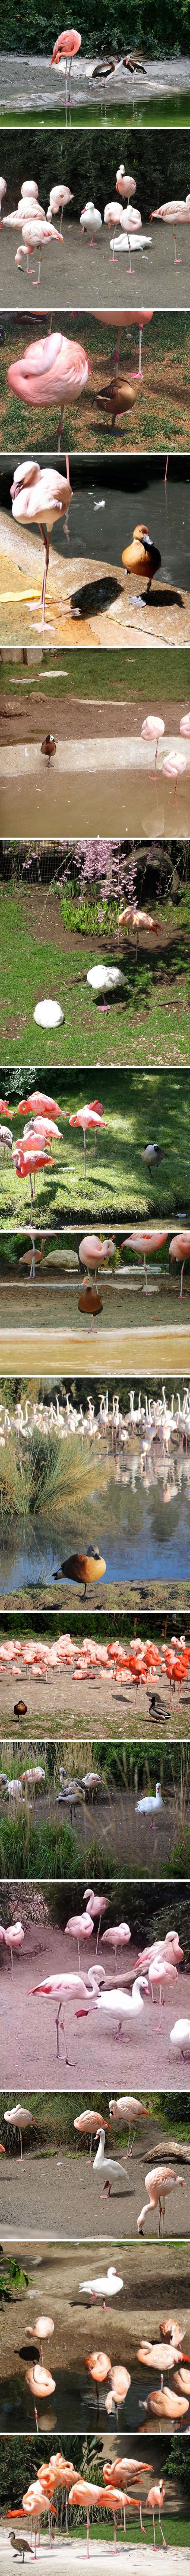 GALERIJA: Misle li ove patke stvarno da su flamingosi ili ih samo glume savršeno dobro?